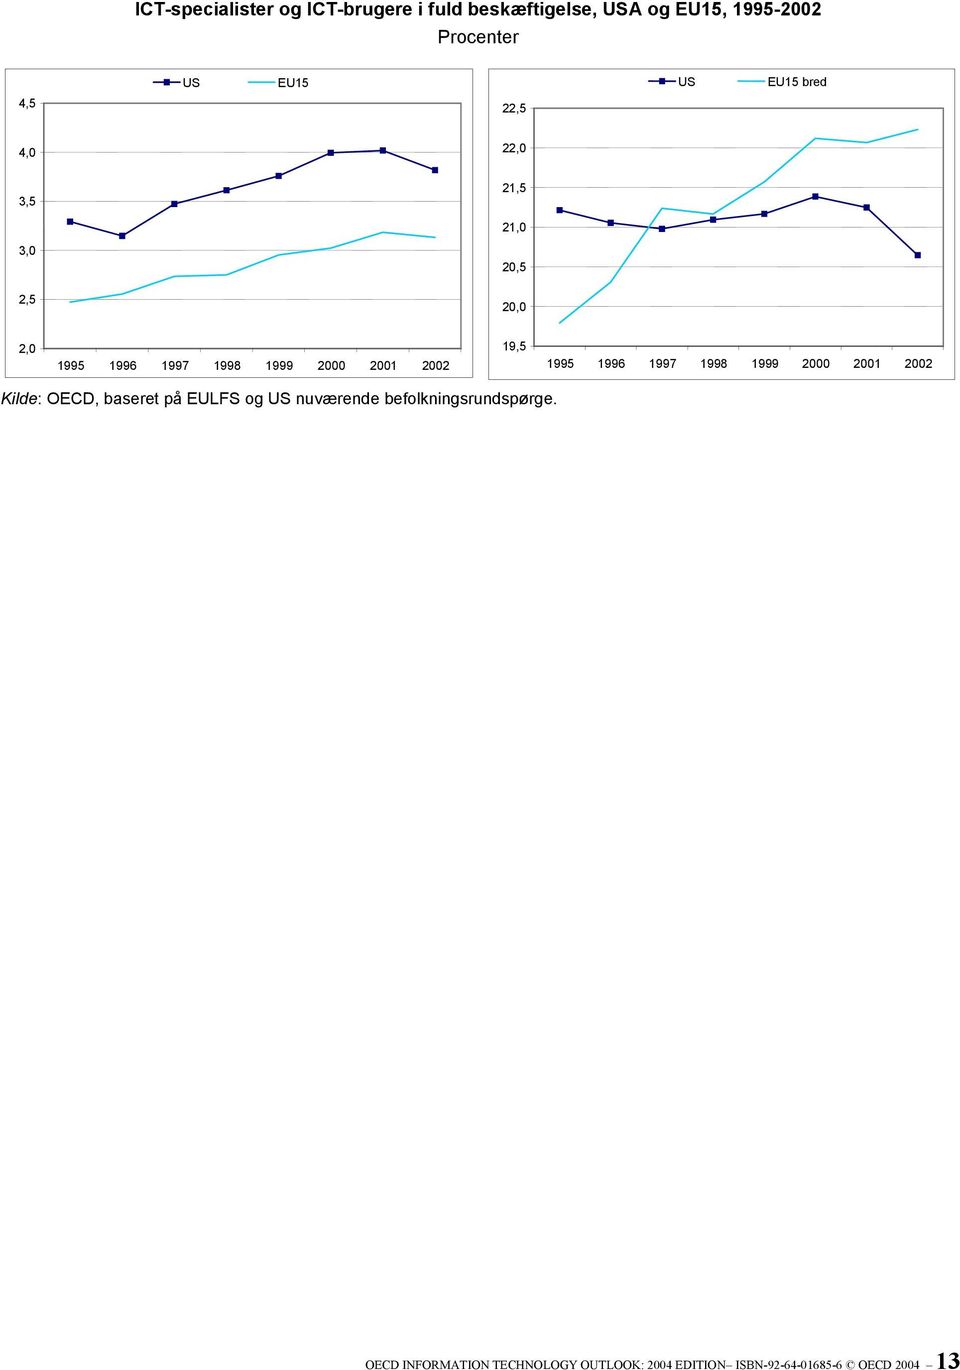 2001 2002 1995 1996 1997 1998 1999 2000 2001 2002 Kilde: OECD, baseret på EULFS og US nuværende